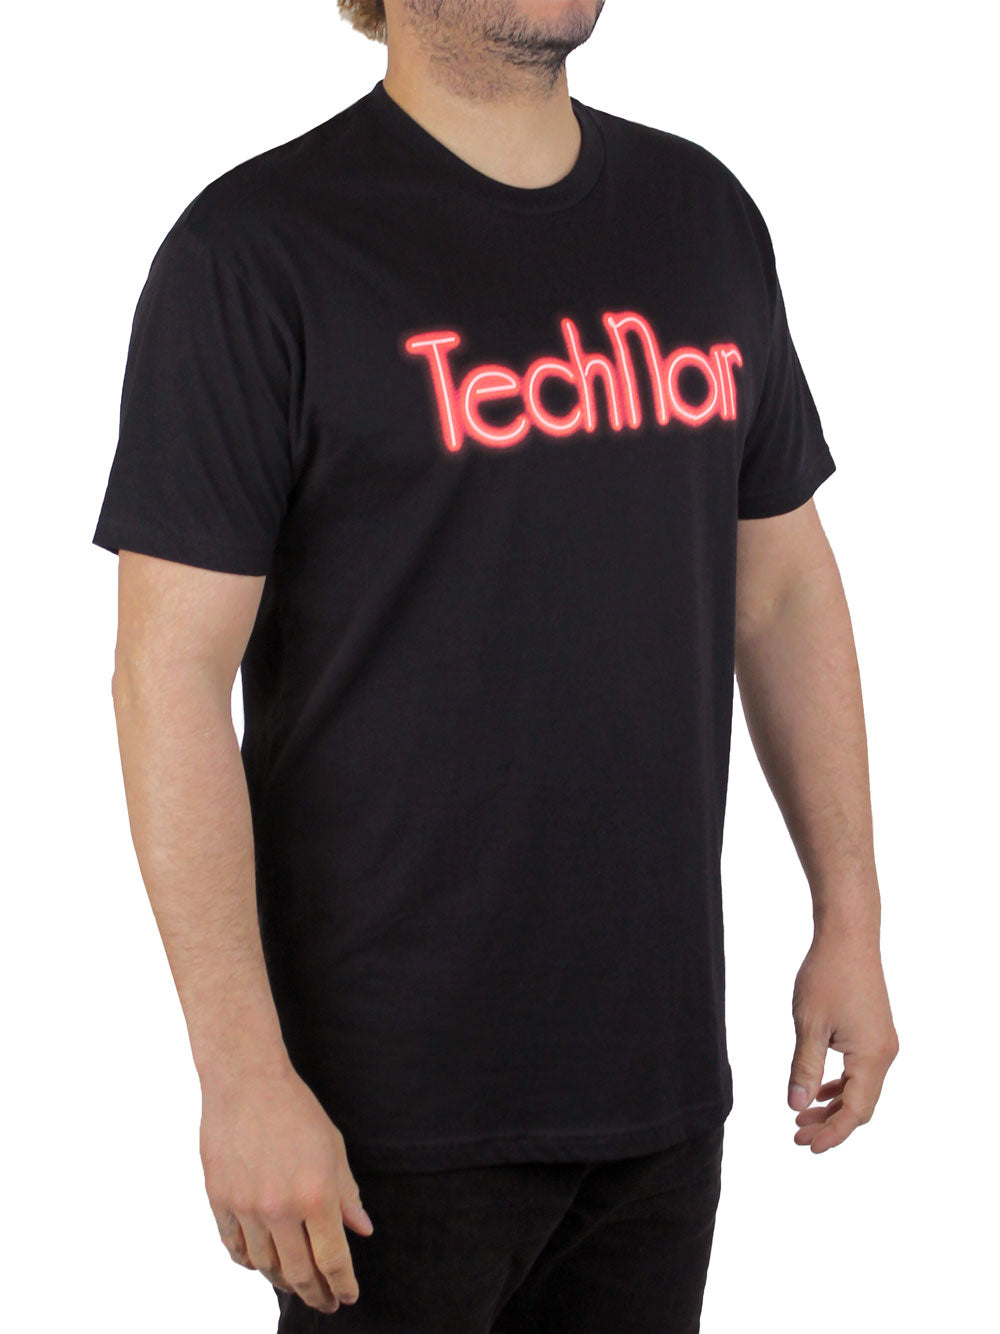 Tech Noir Shirt 3/4 View